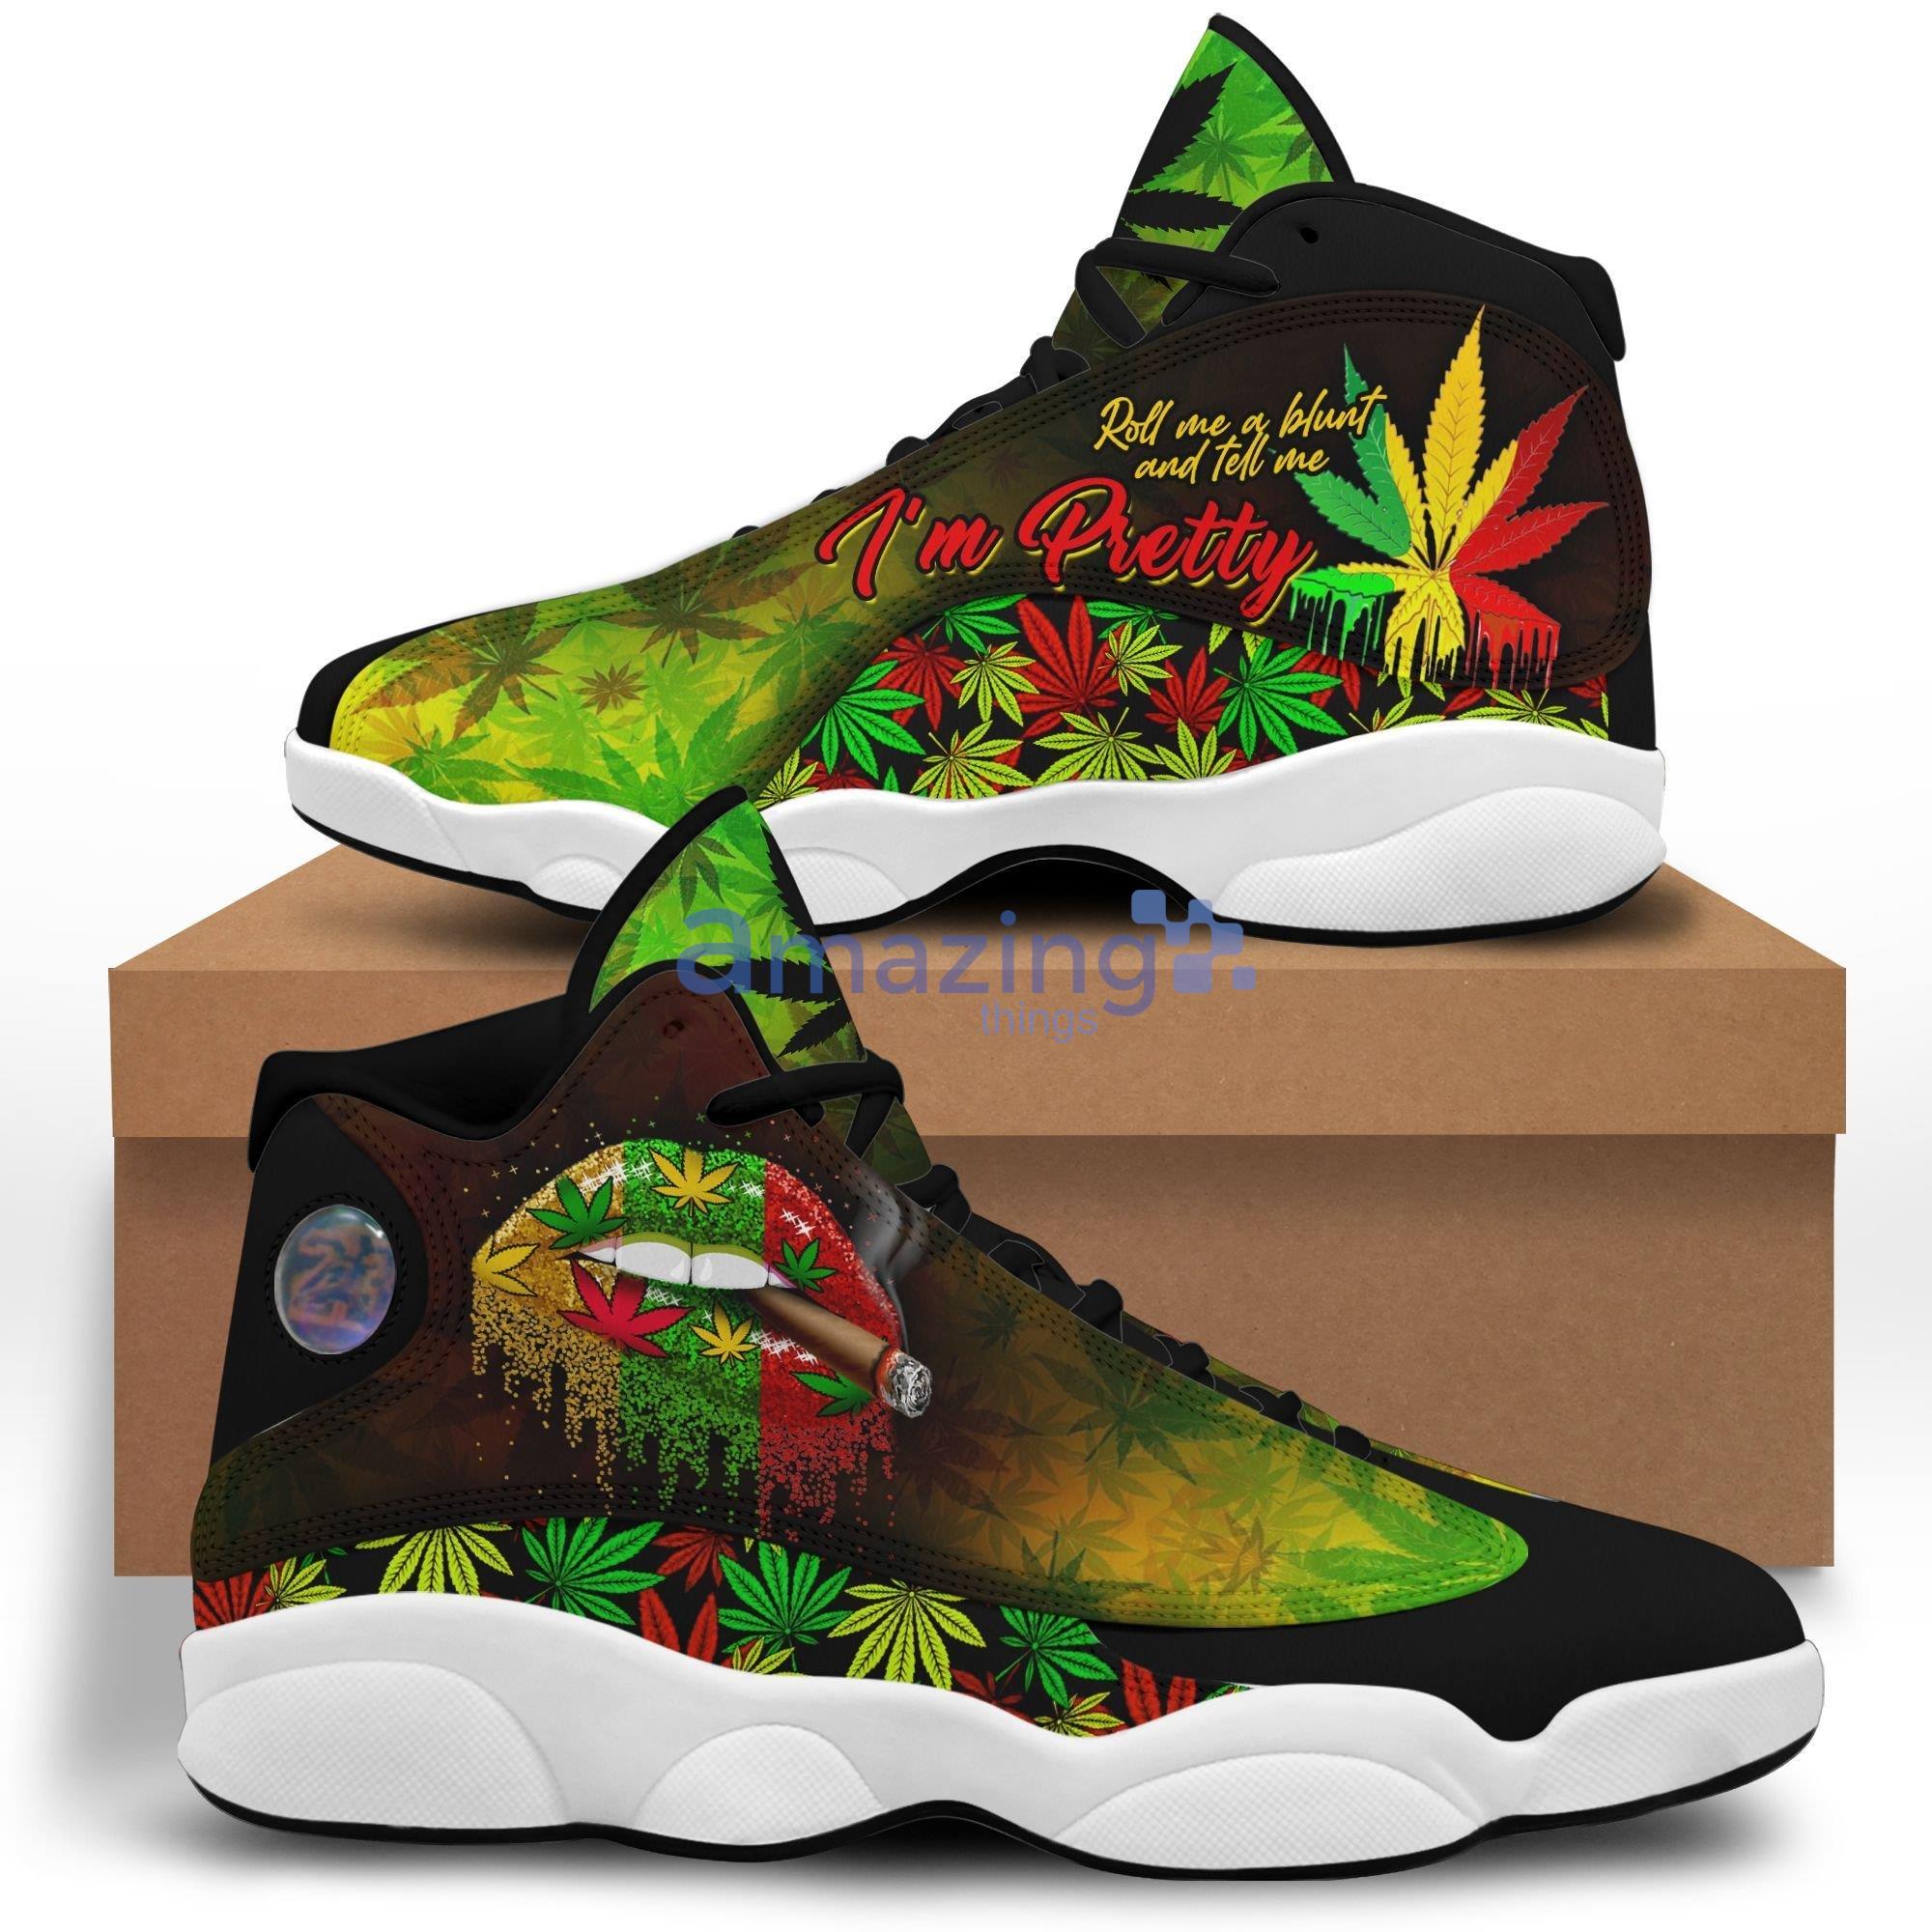 Personalized Shoe 420 Weed Air Jordan 13 Air Jordan 13 Shoes For Men And  Women